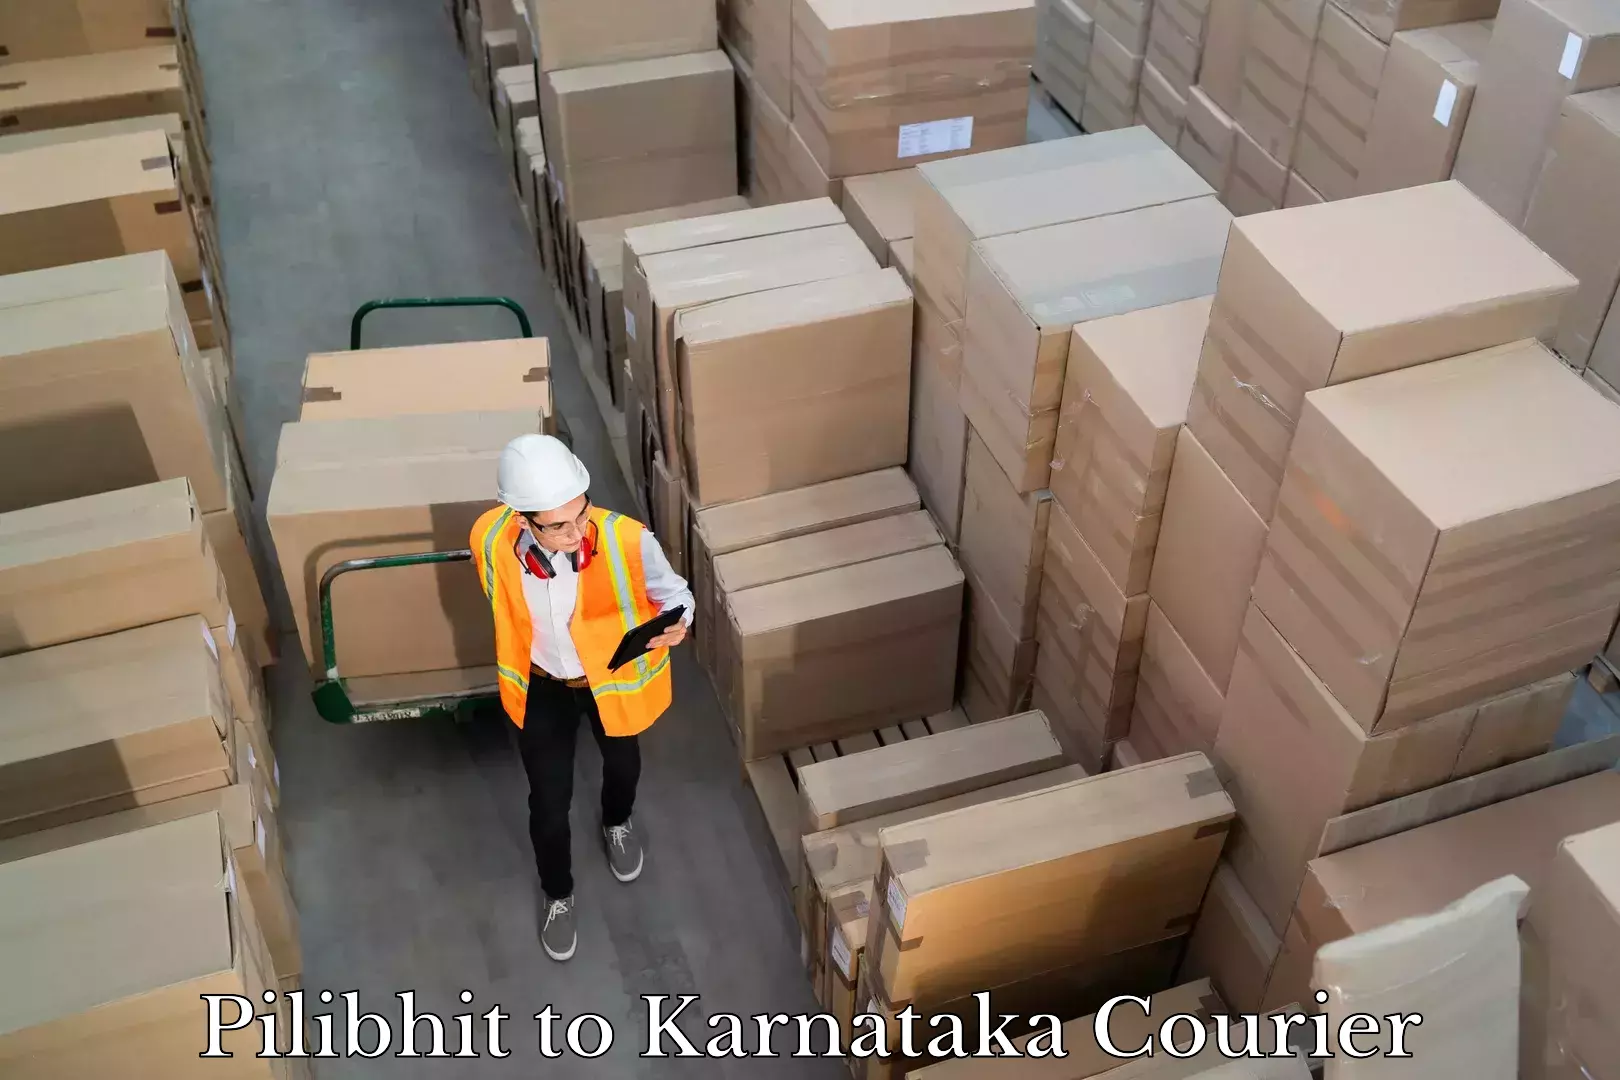 Professional courier handling Pilibhit to Karnataka